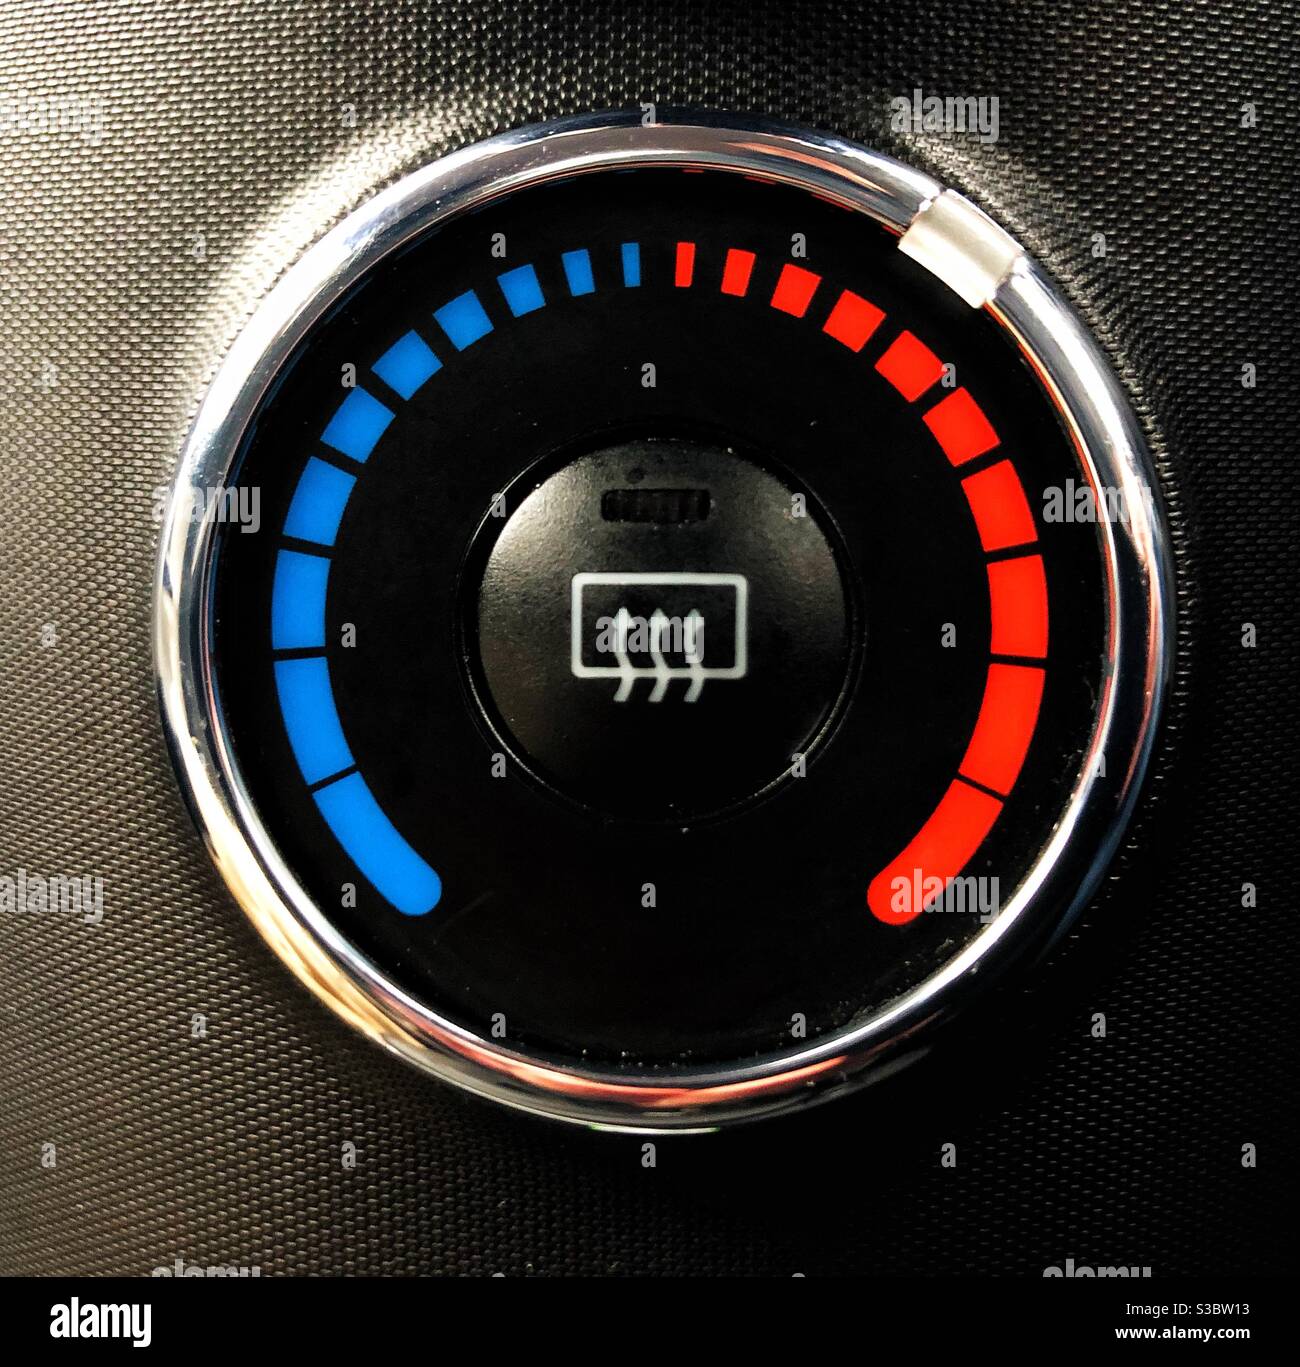 Un indicador de temperatura o calor y control en un coche Foto de stock